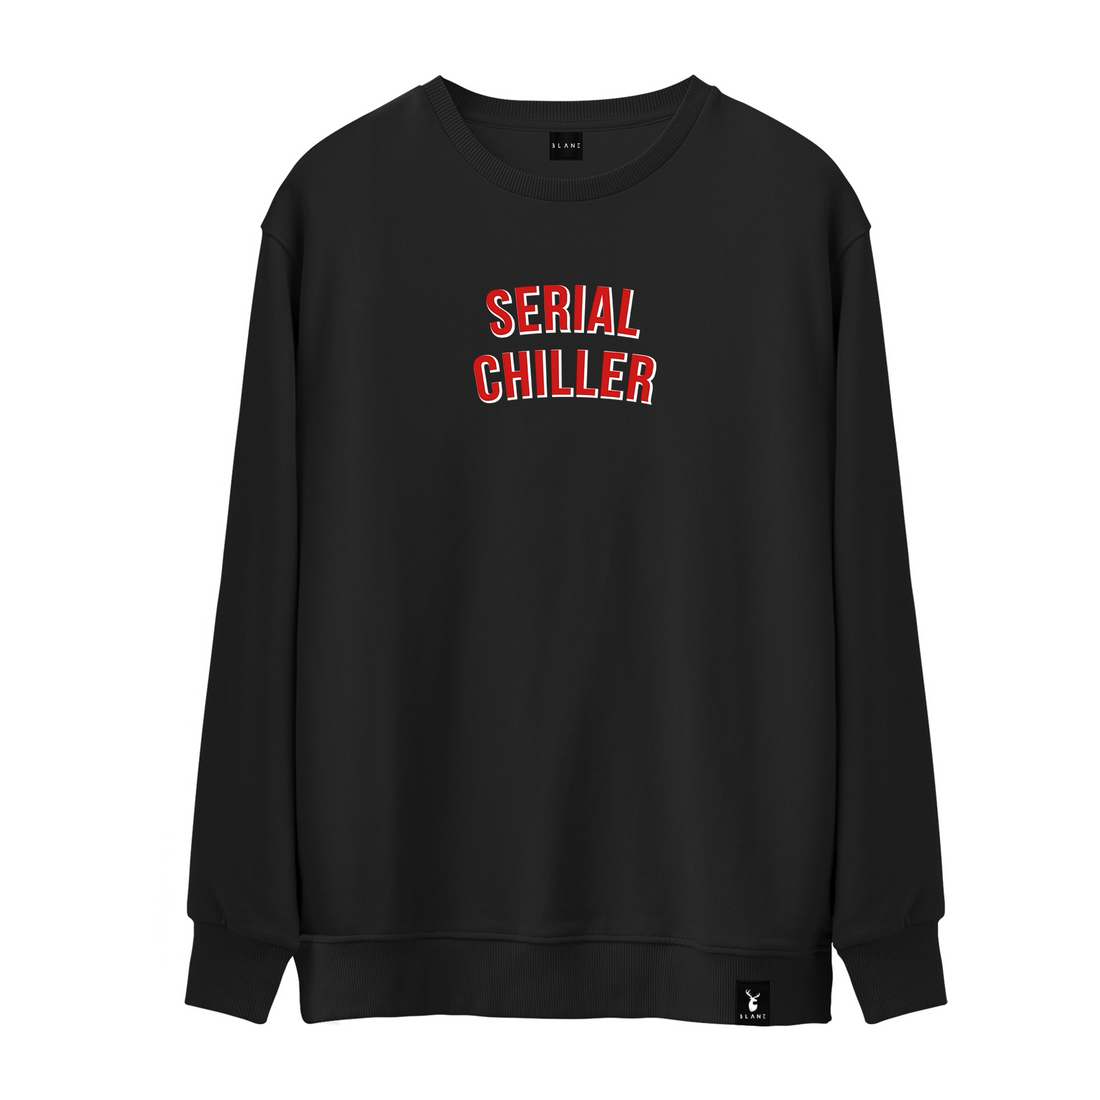 Serial Chiller - Sweatshirt